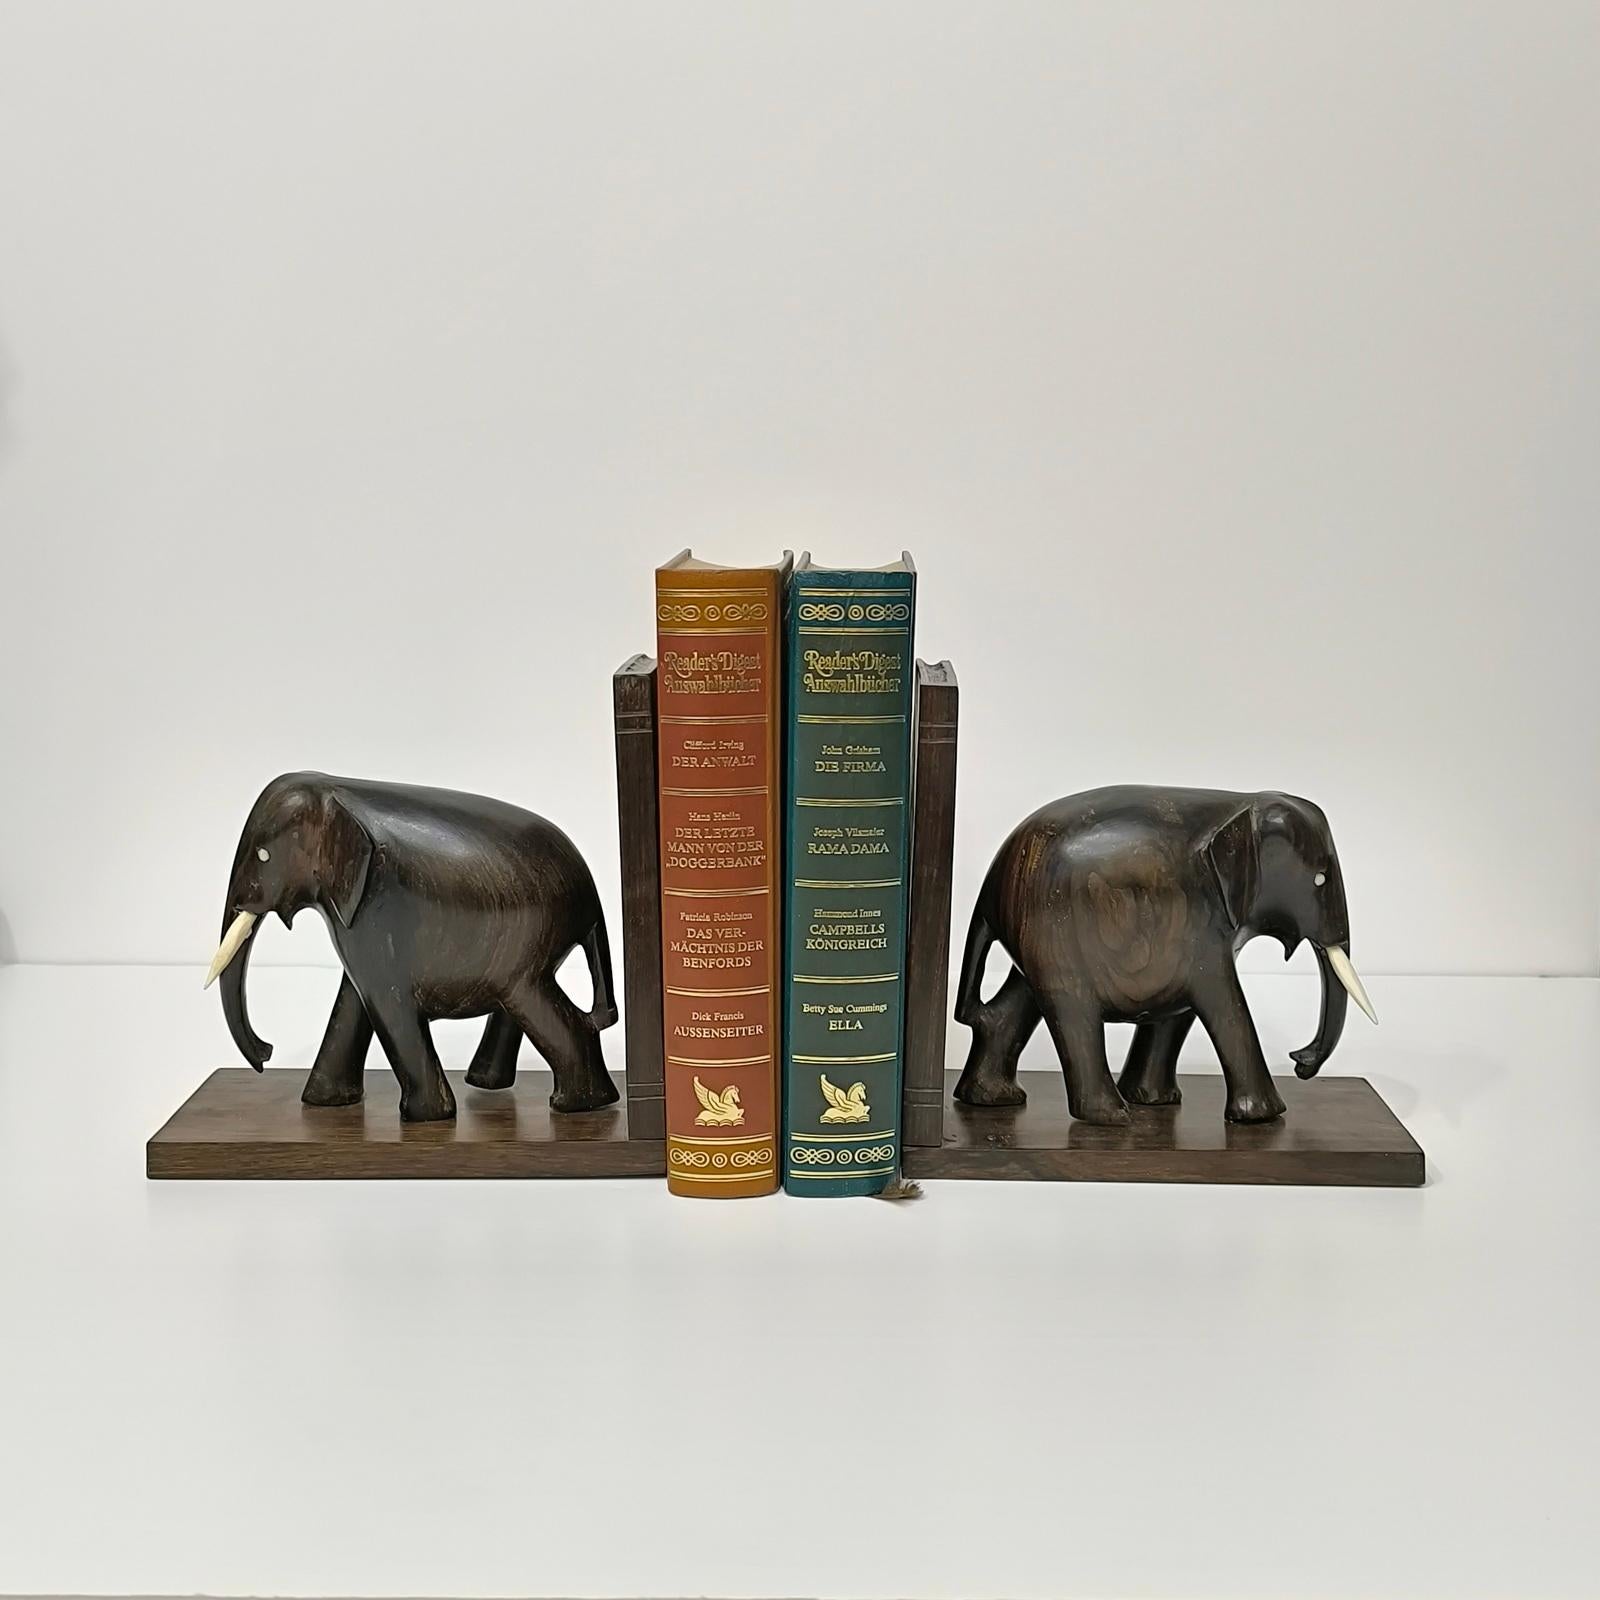 Il s'agit d'une paire de serre-livres éléphants vintage. Ils sont fabriqués en bois dur, sculptés à la main, et ont des yeux et des défenses en os. 

Ils sont en excellent état d'usage. Ils sont ravissants pour le lecteur régulier de romans, sur un